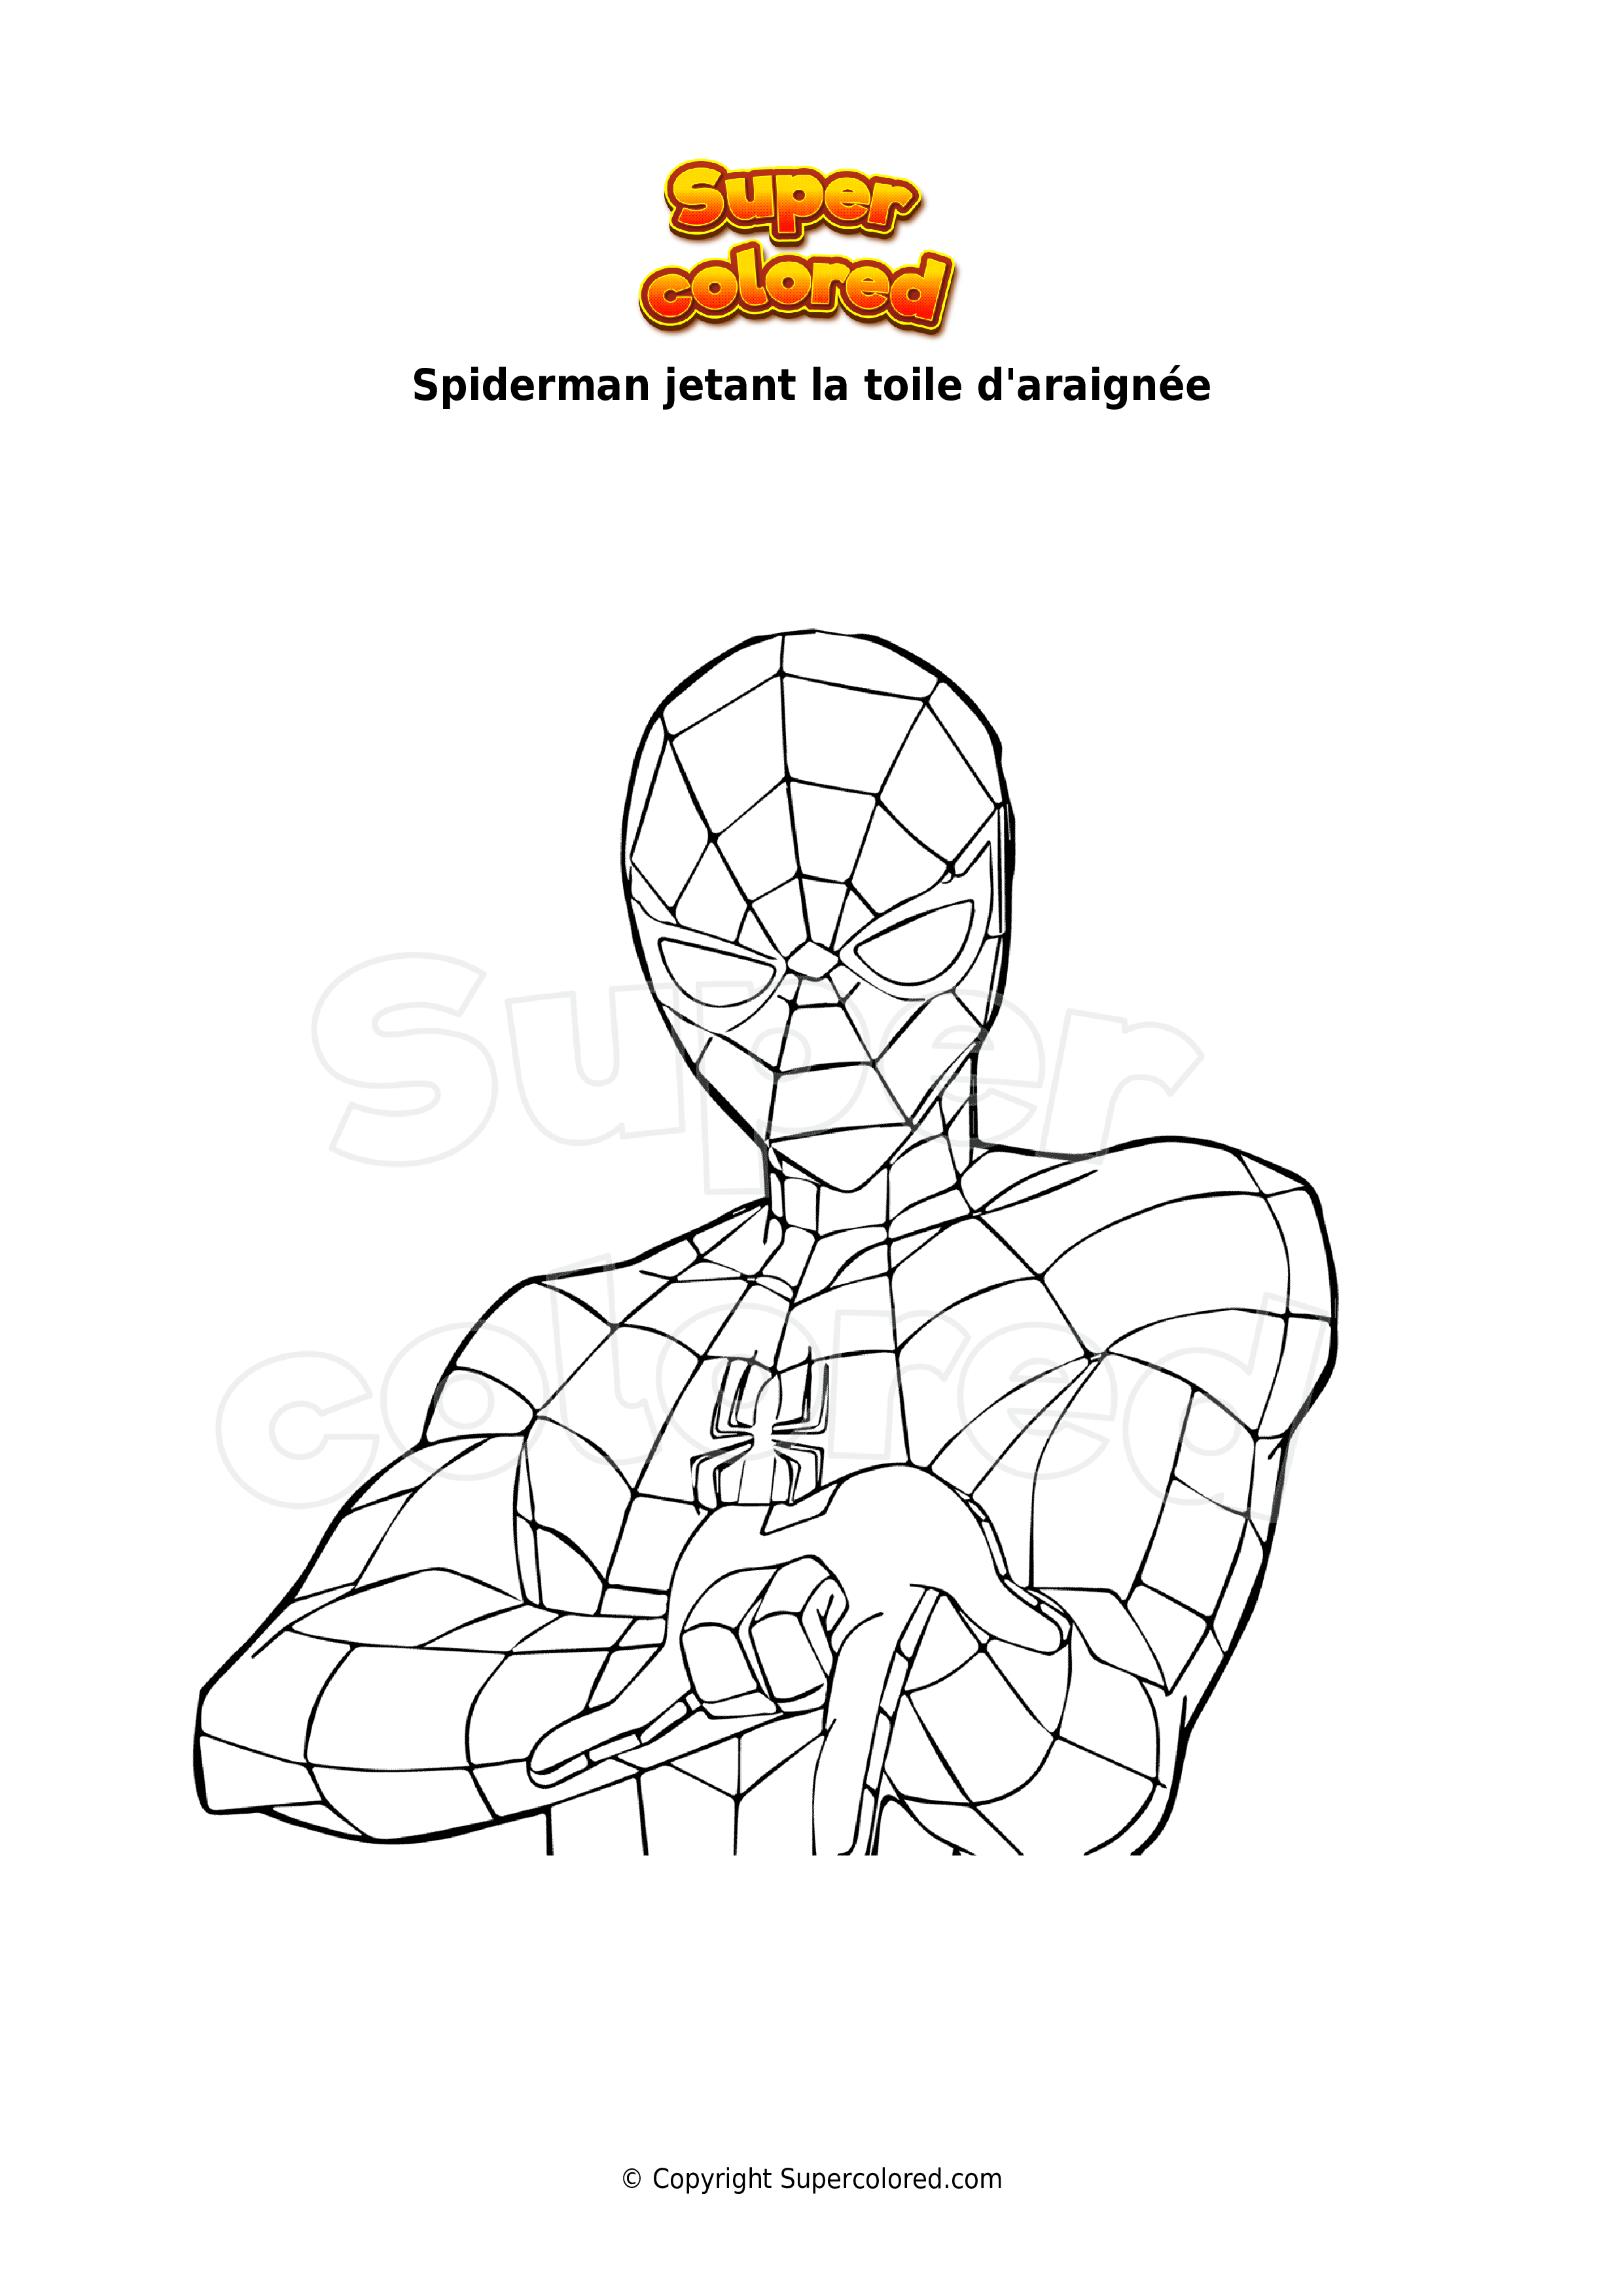 Coloriage Spiderman jetant la toile d'araignée 